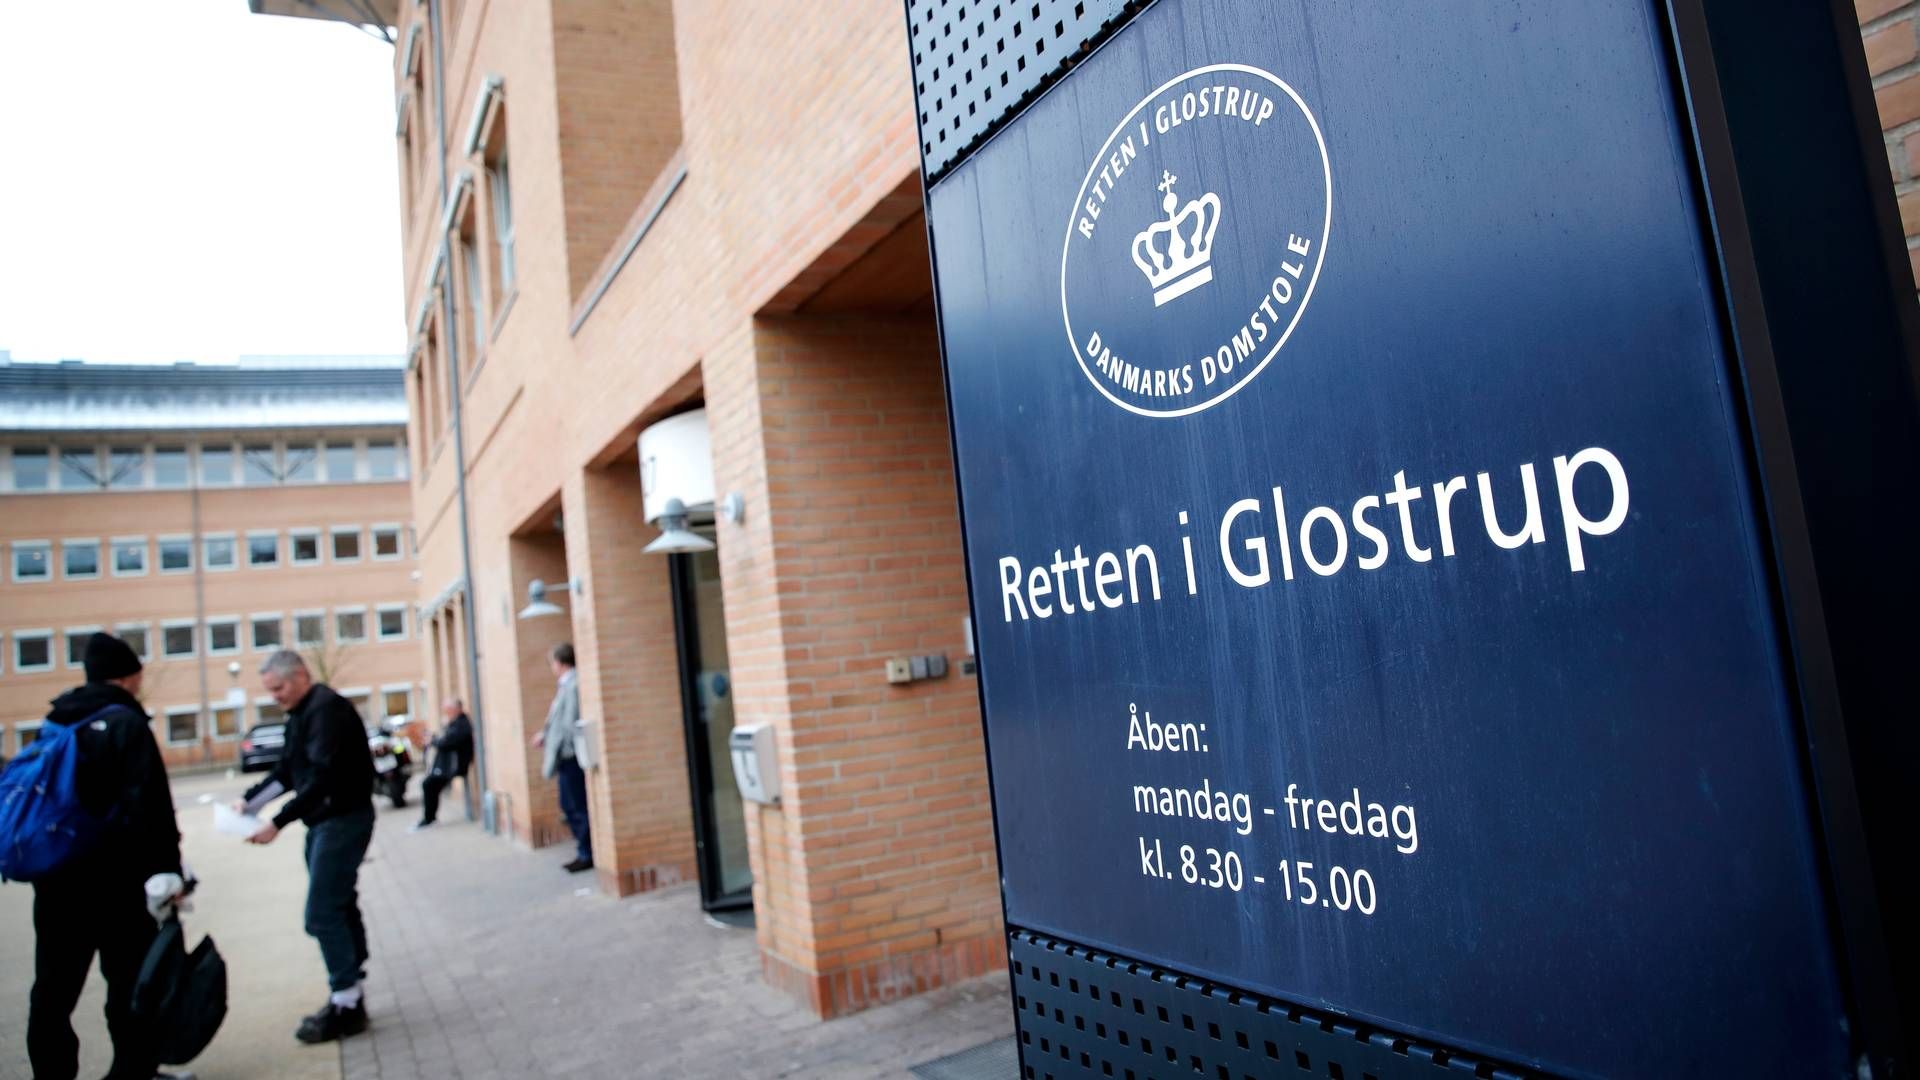 Retten i Glostrup vil efter planen torsdag danne ramme om første retsmøde med Sanjay Shah på dansk grund. | Foto: Jens Dresling